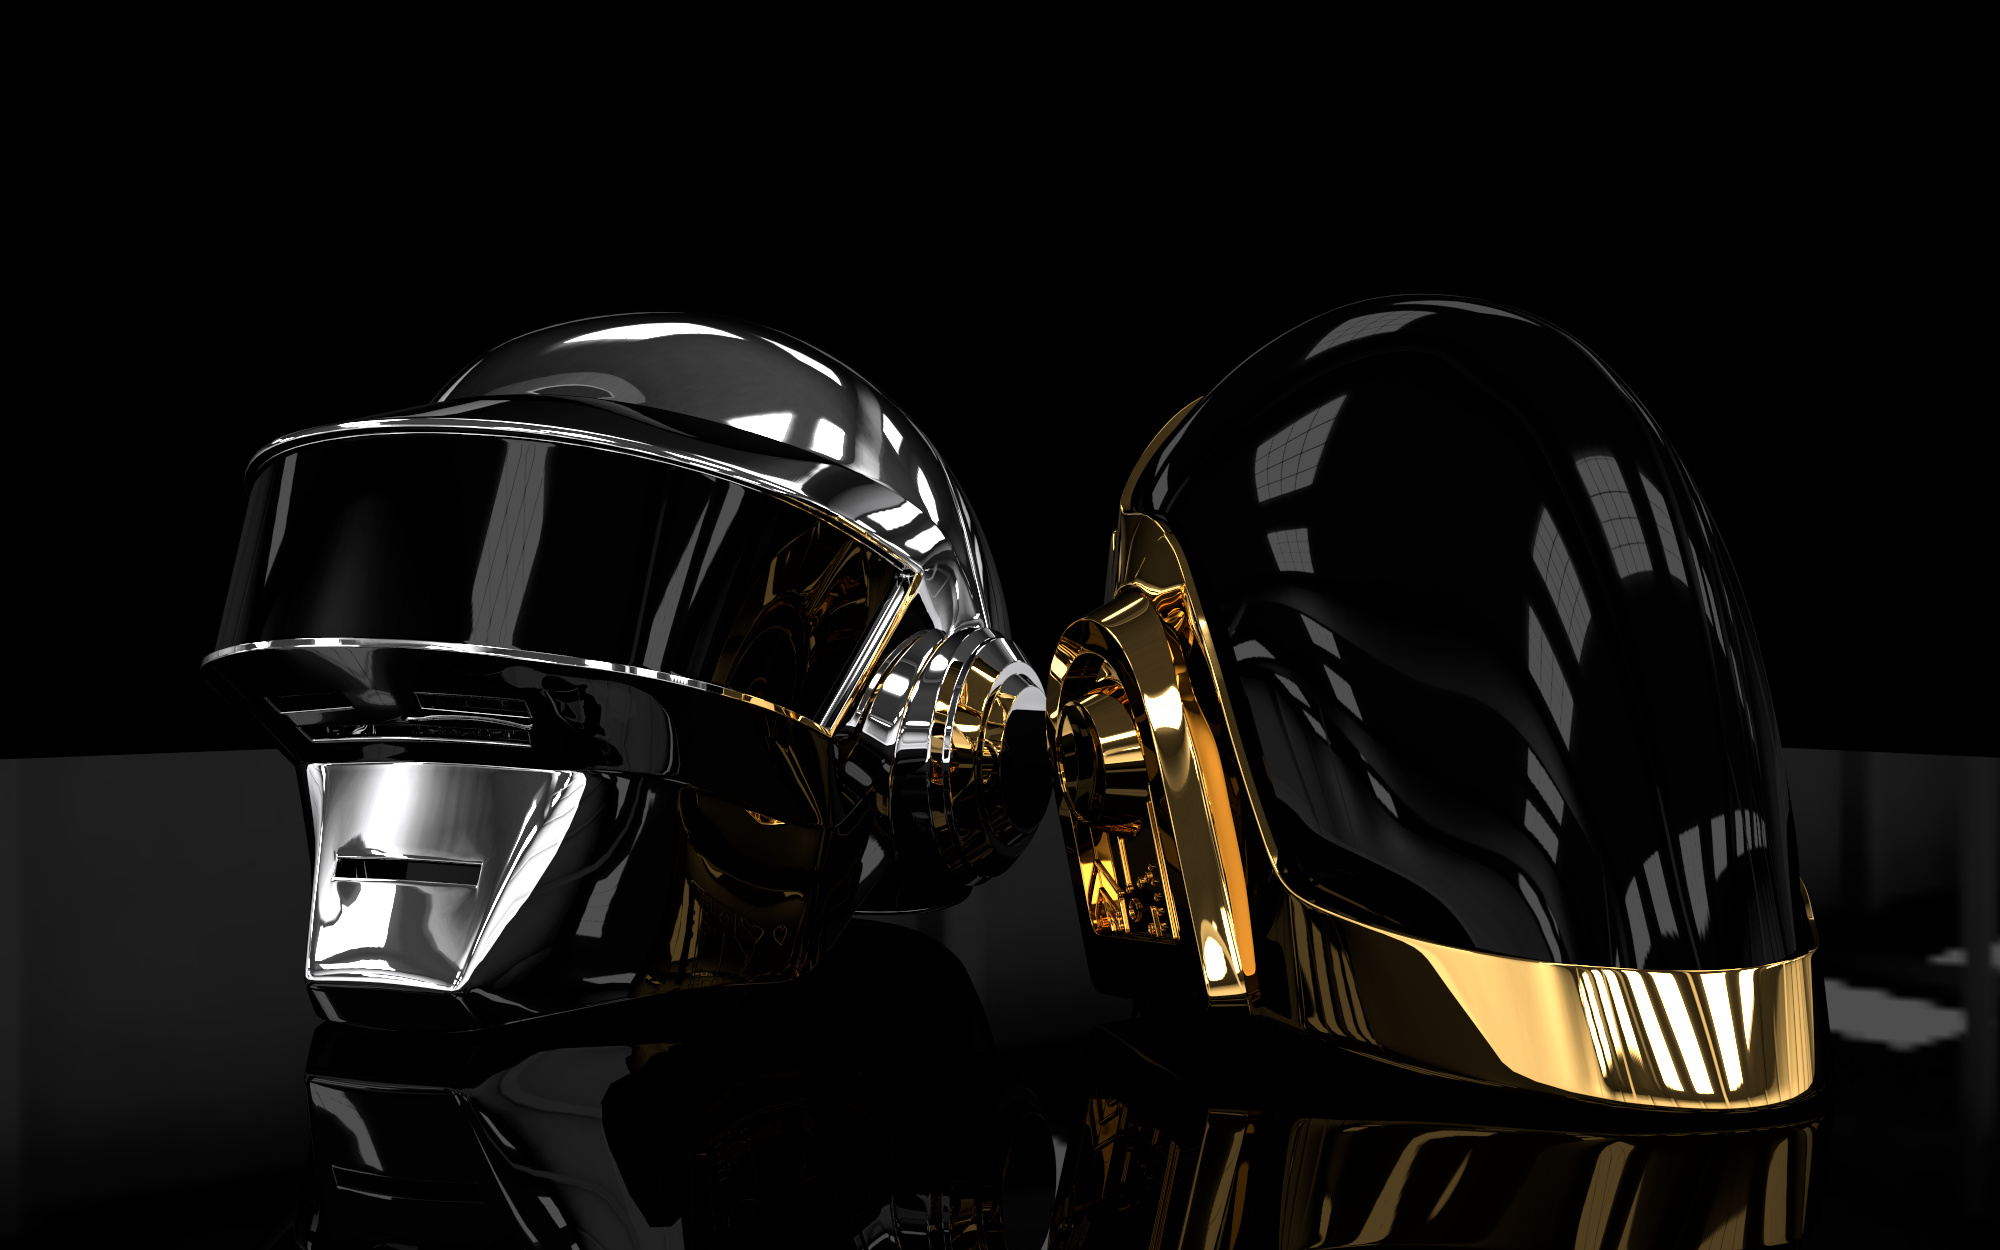 Daft Punk Helmets - Focused Critiques - Blender Artists ...